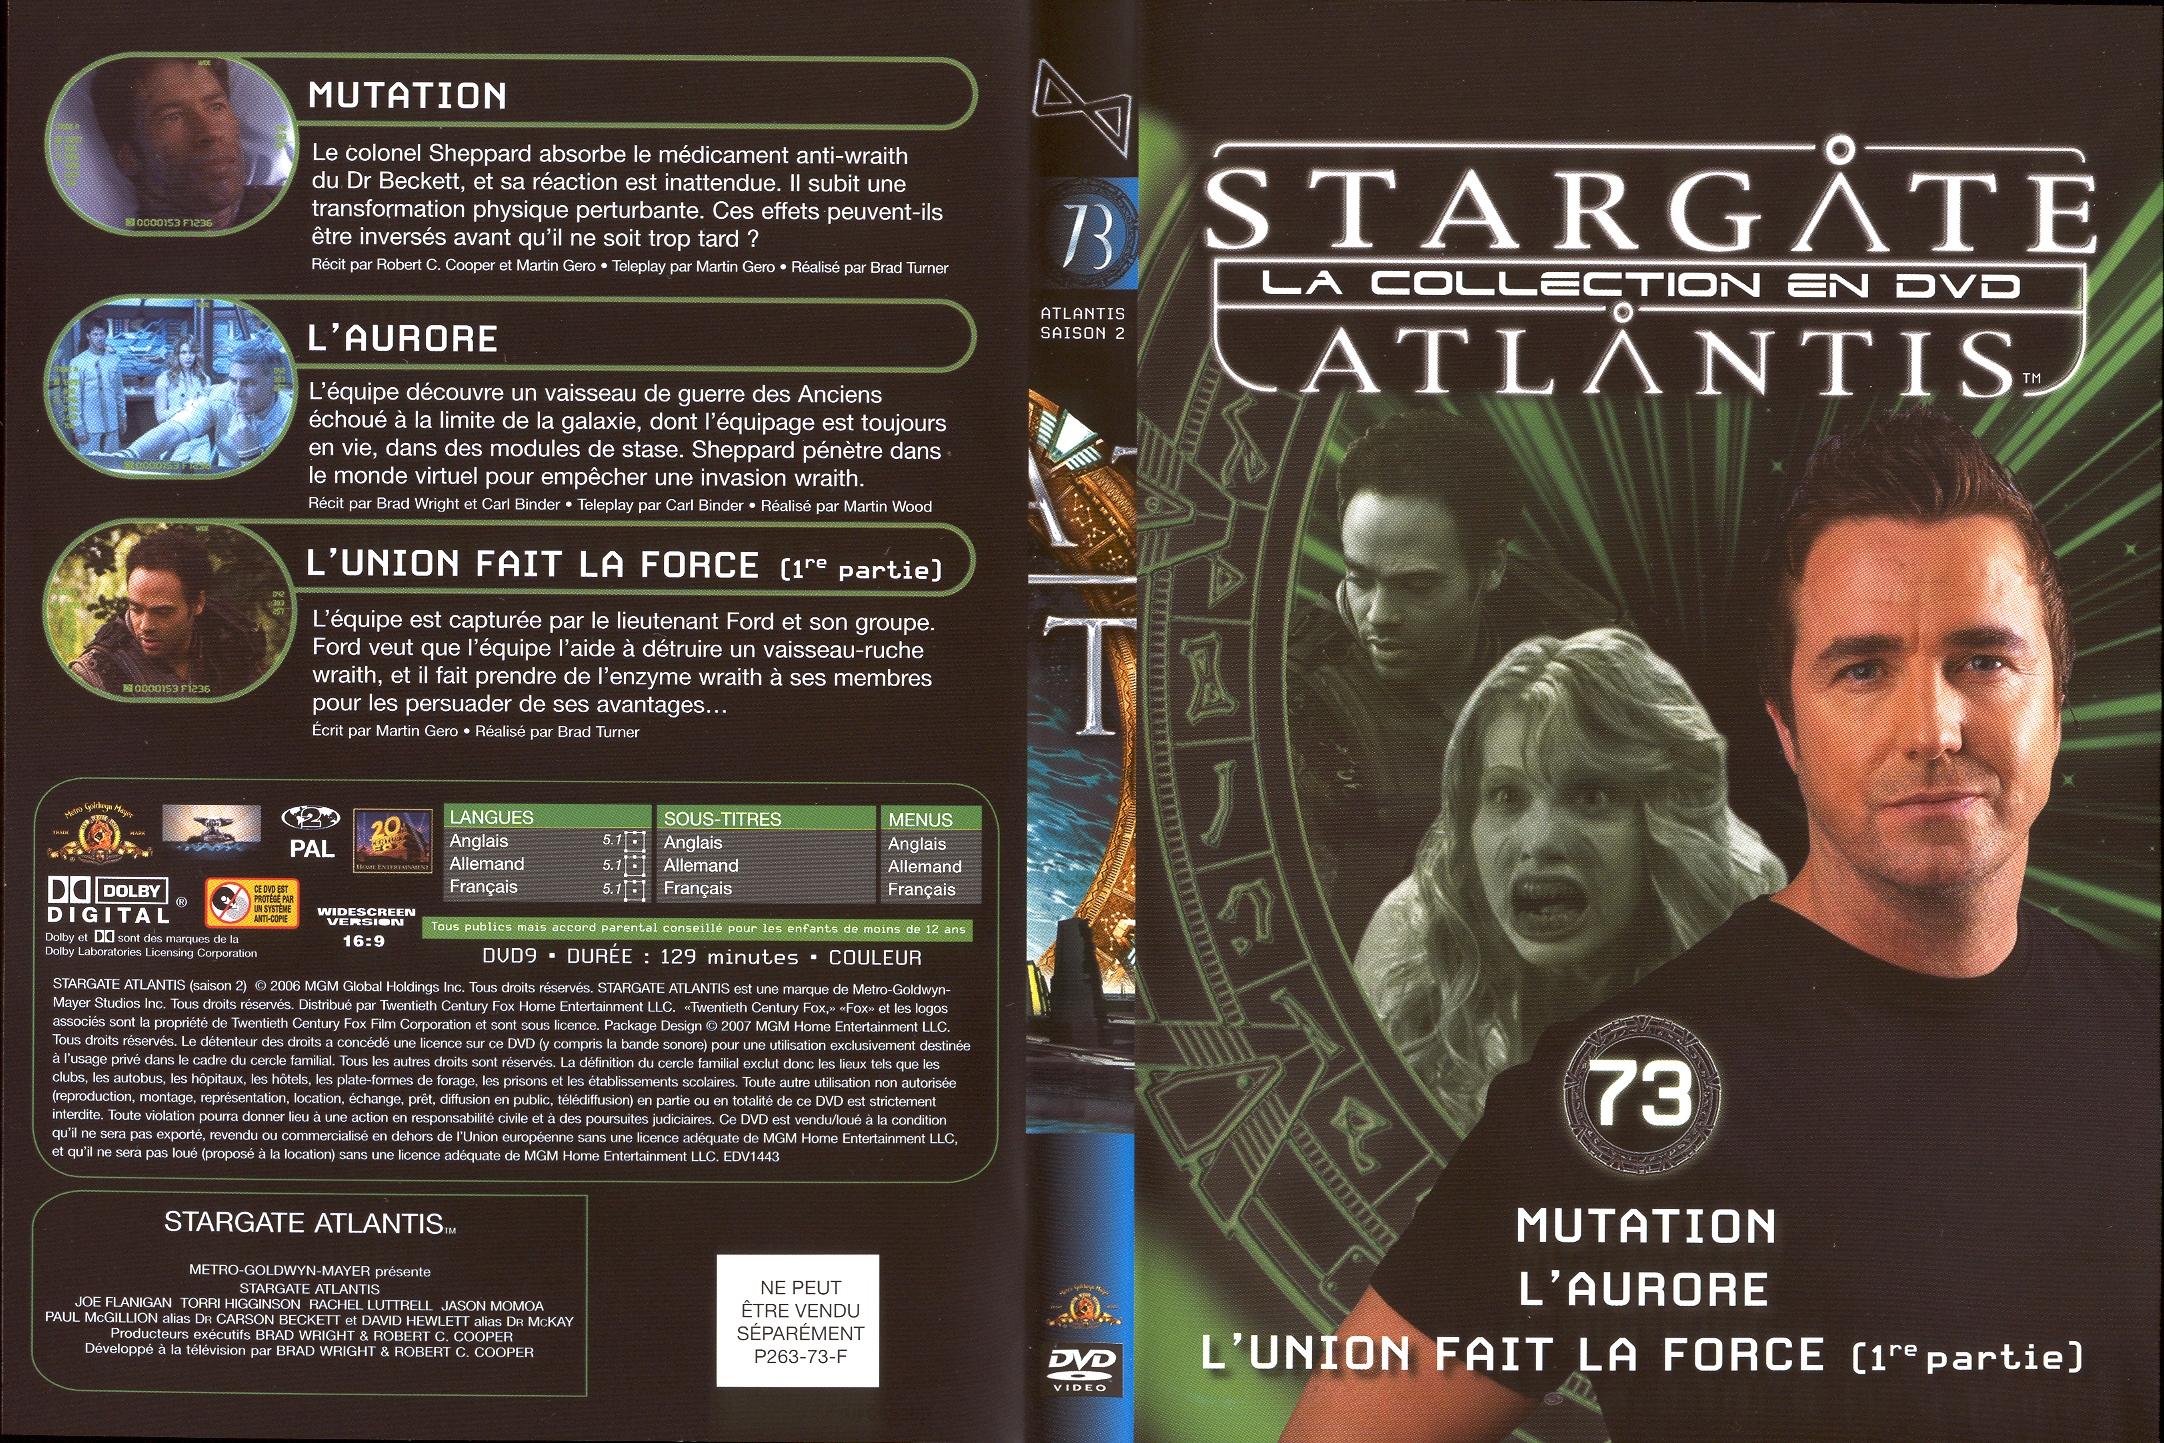 Jaquette DVD Stargate atlantis saison 2 vol 73